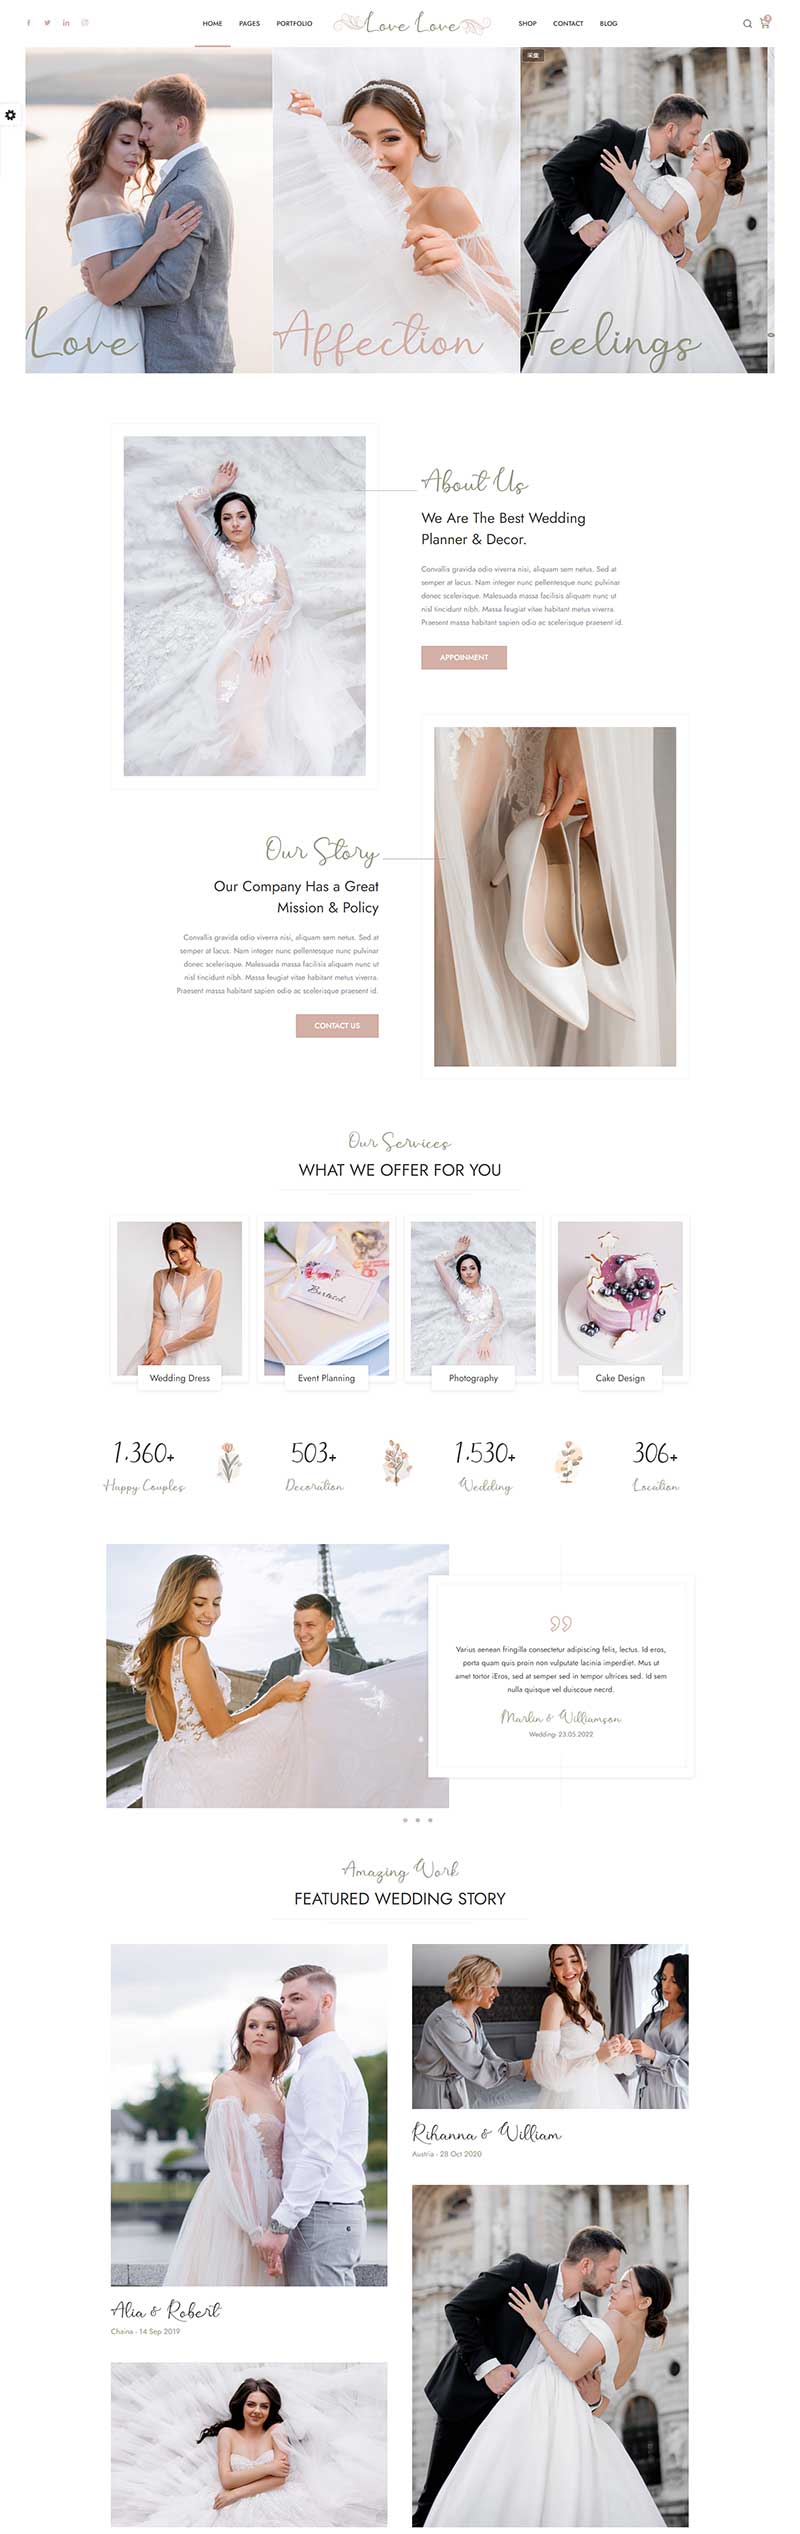 HTML5婚庆婚饰婚纱摄影服务网站模板